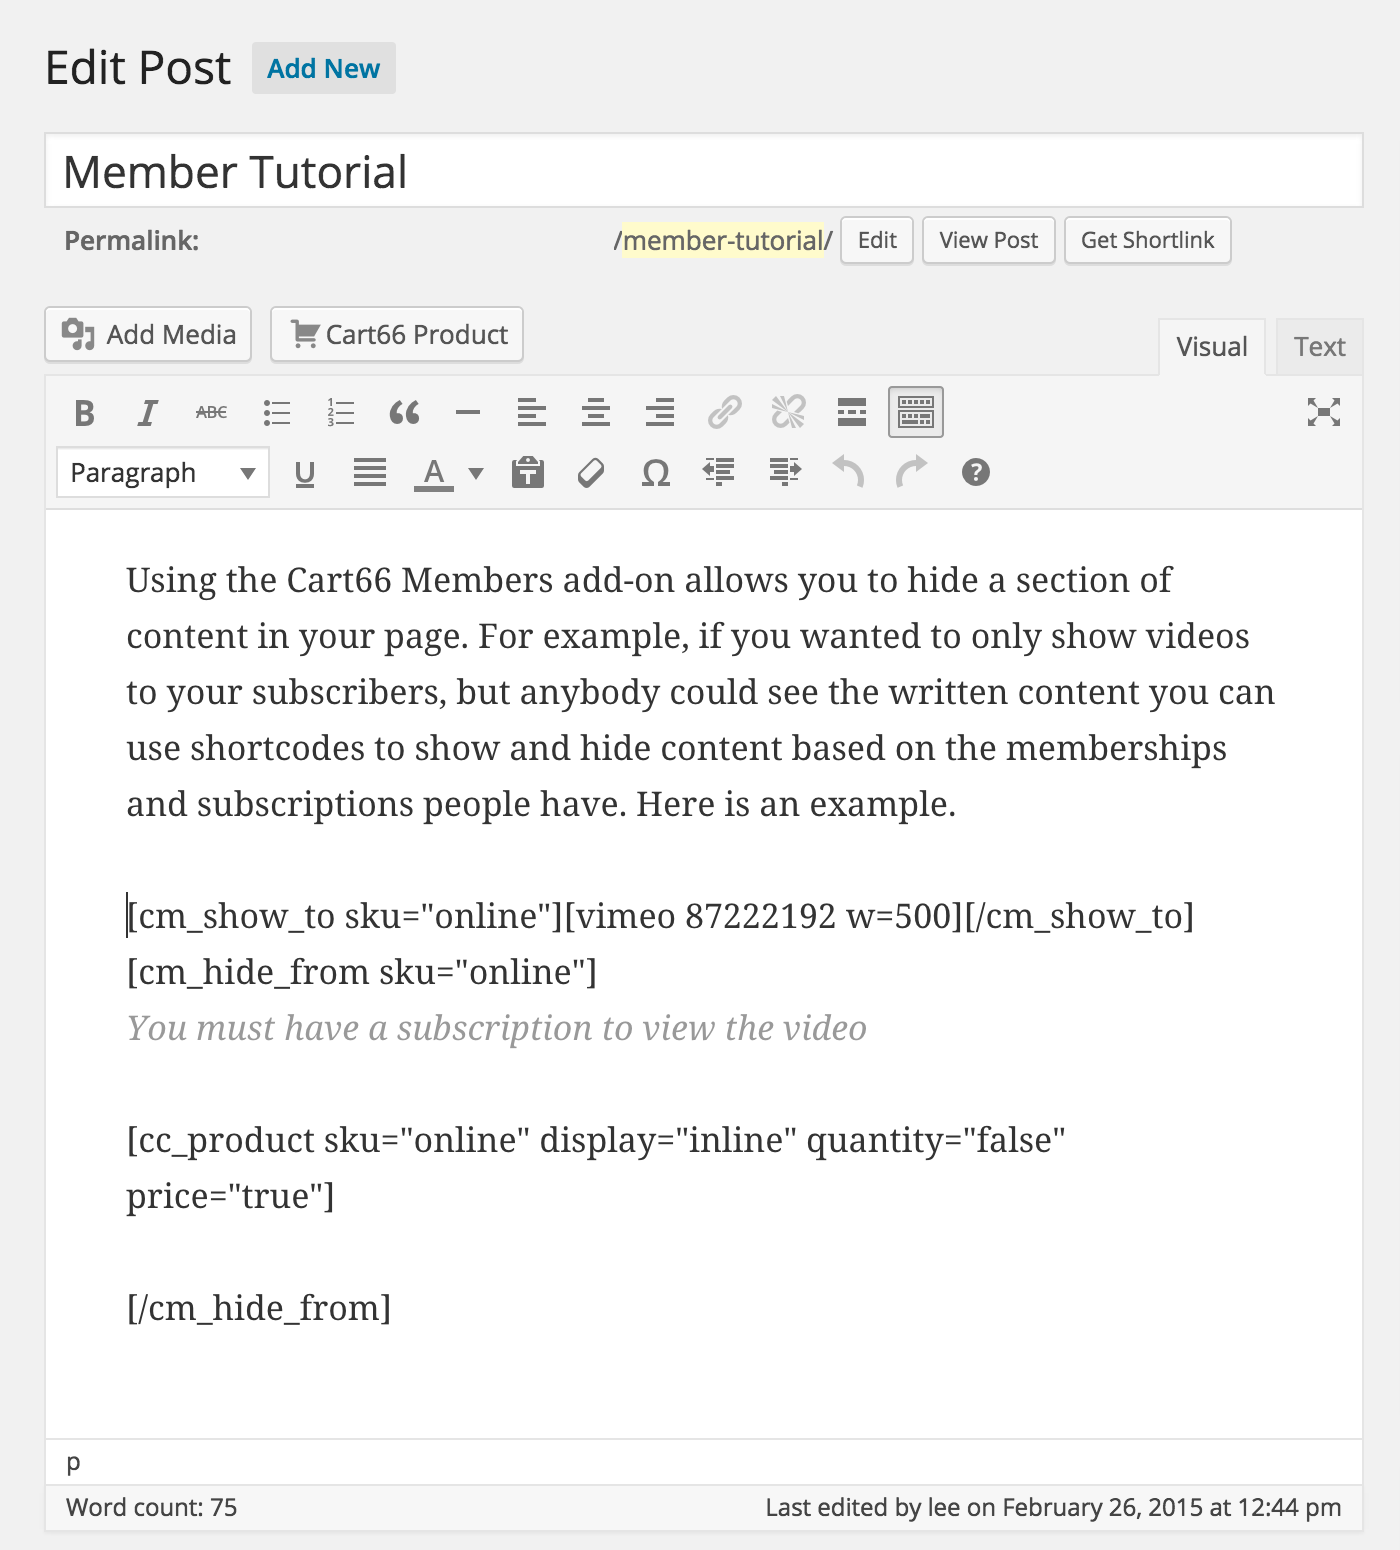 Member tutorial WordPress post editor